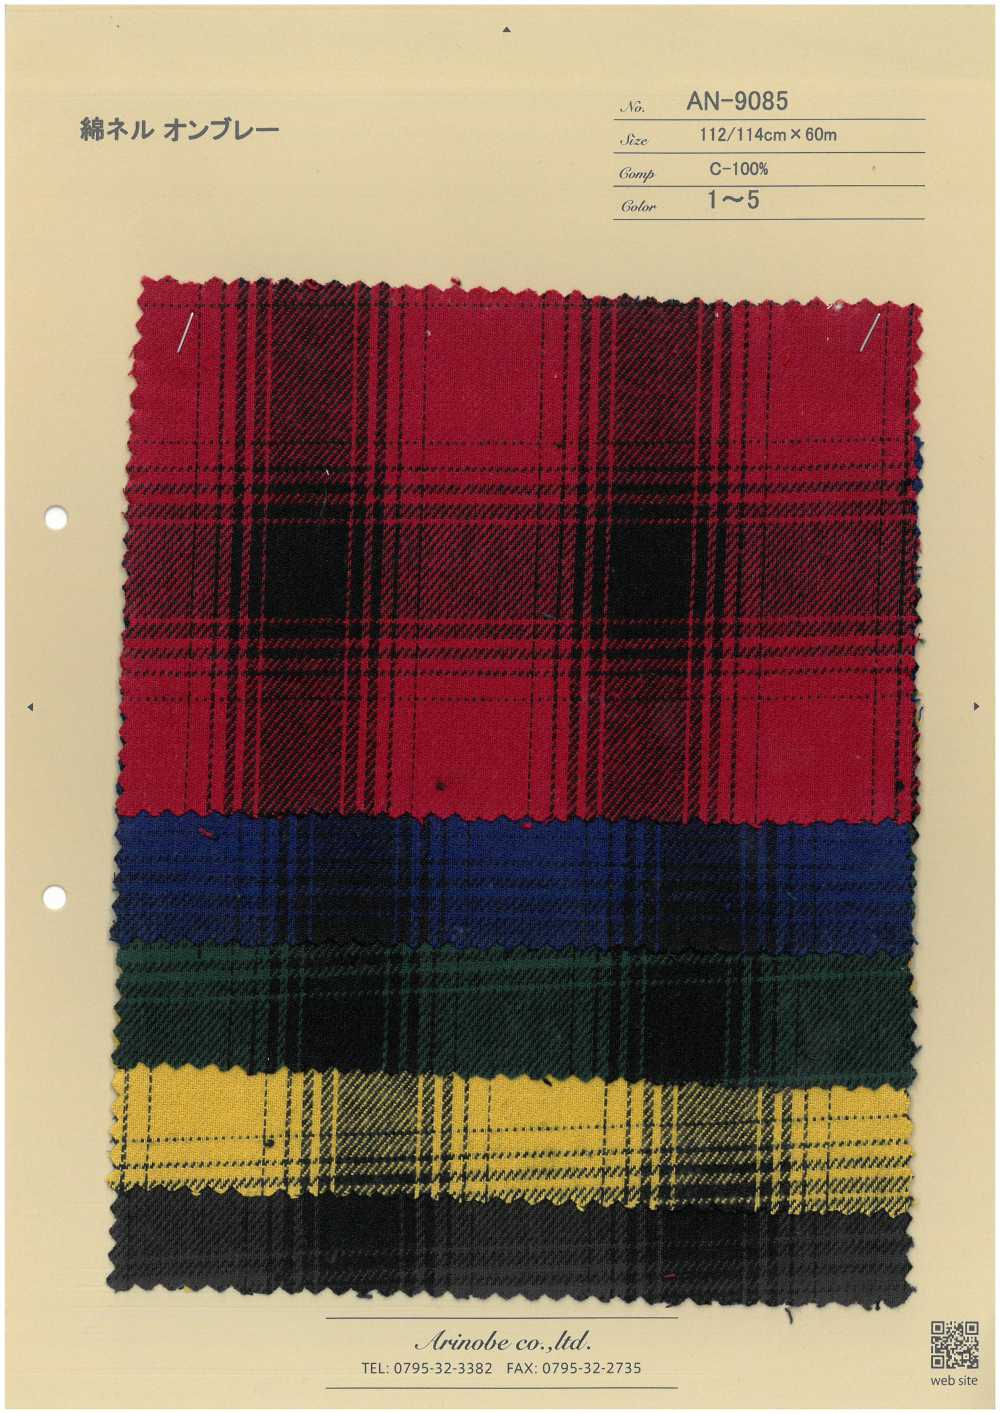 AN-9085 Baumwollflanell Ombre[Textilgewebe] ARINOBE CO., LTD.